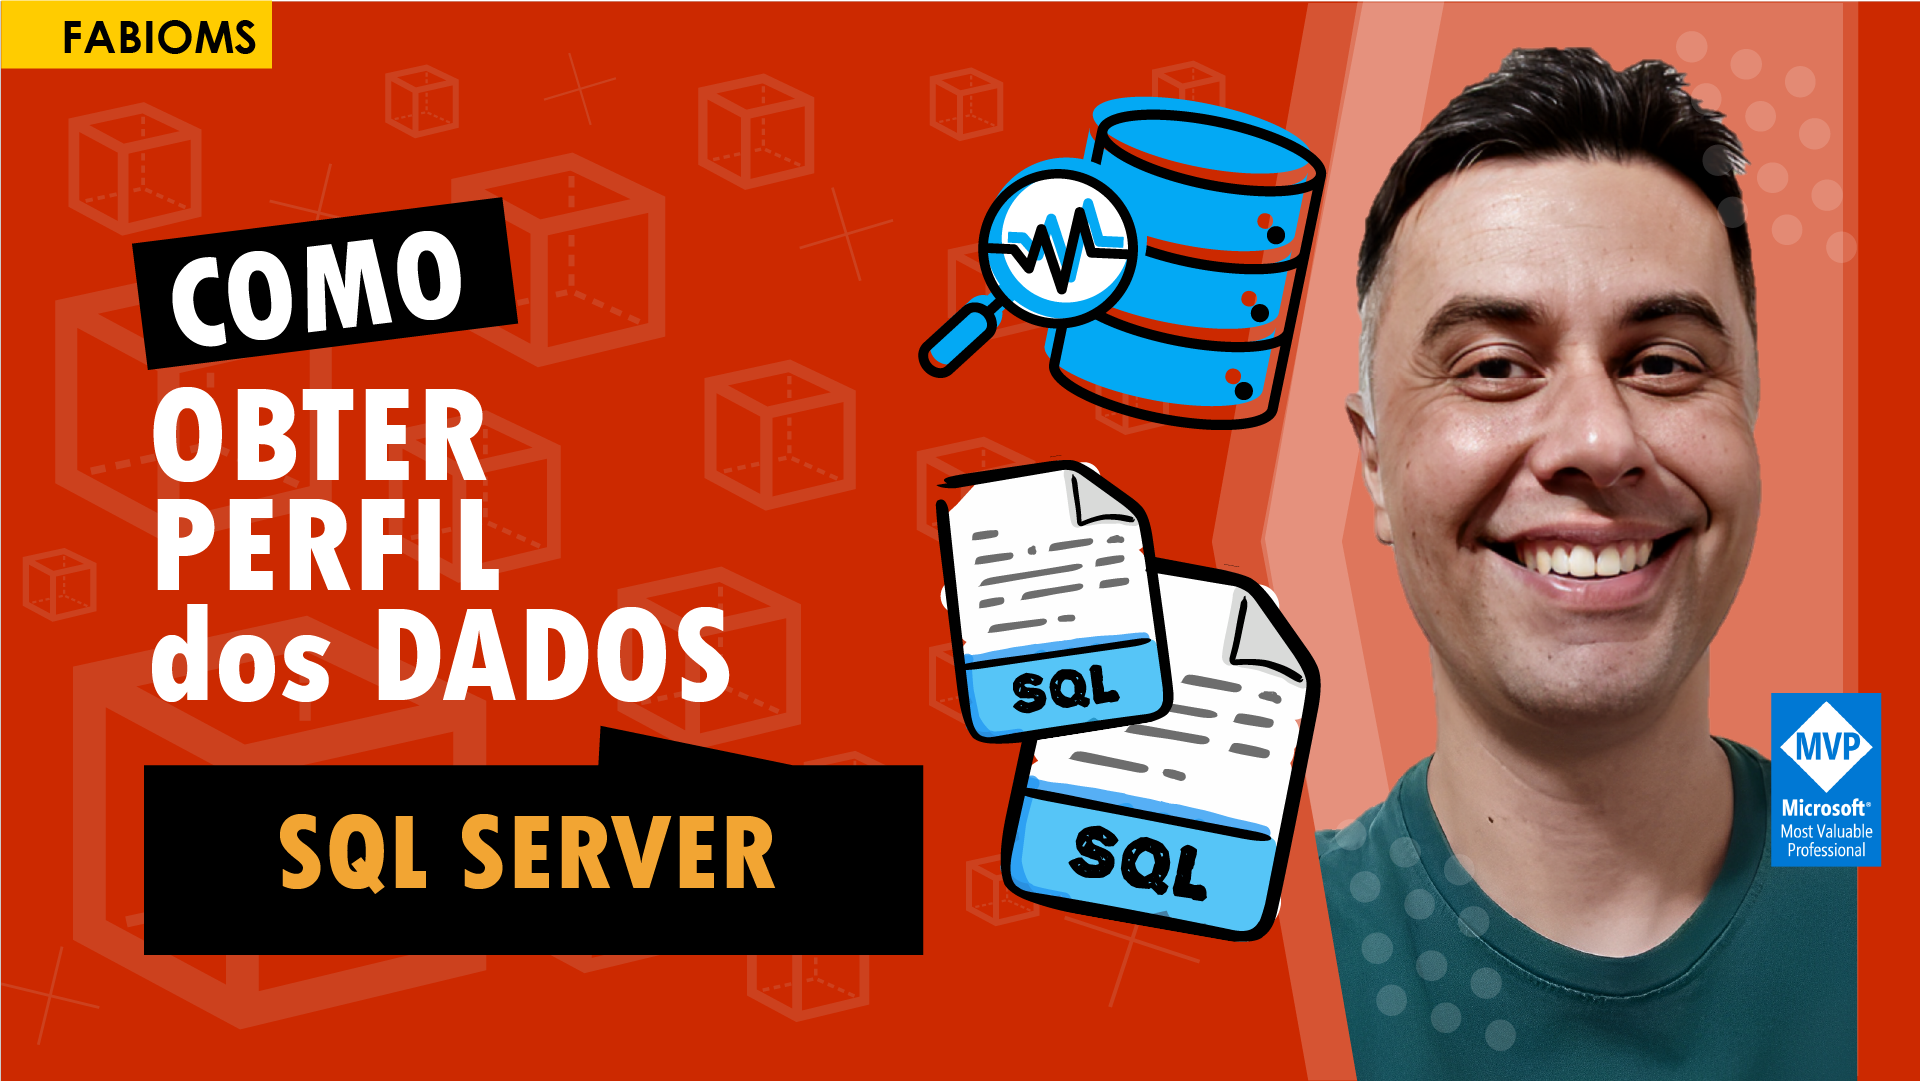 Como obter amostra dos dados no SQL Server